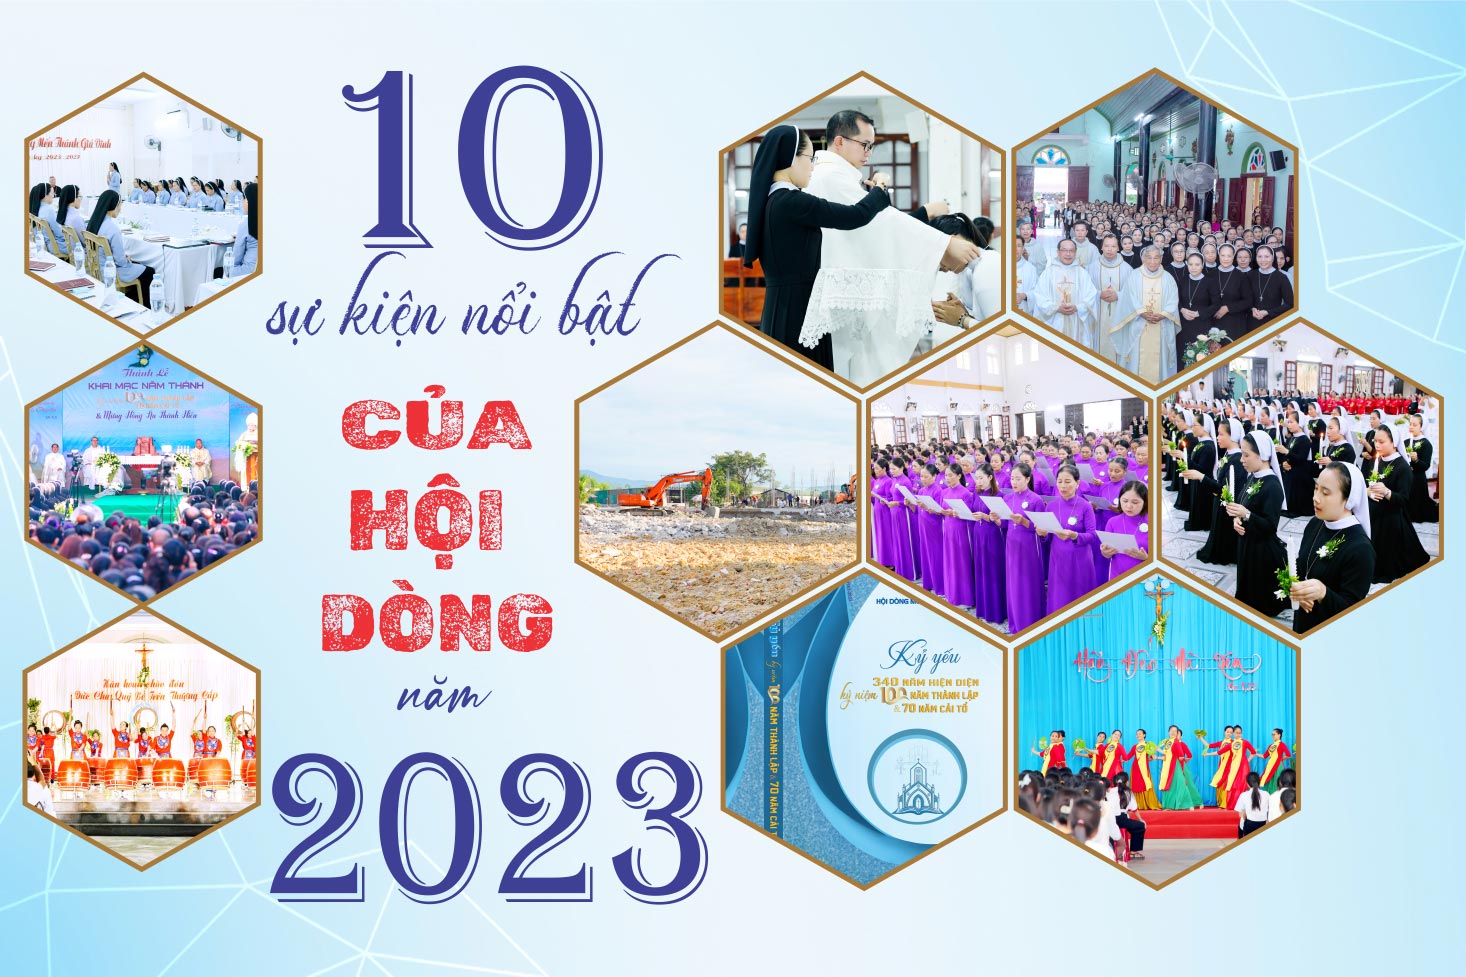 10 sự kiện nổi bật của Hội Dòng năm 2023